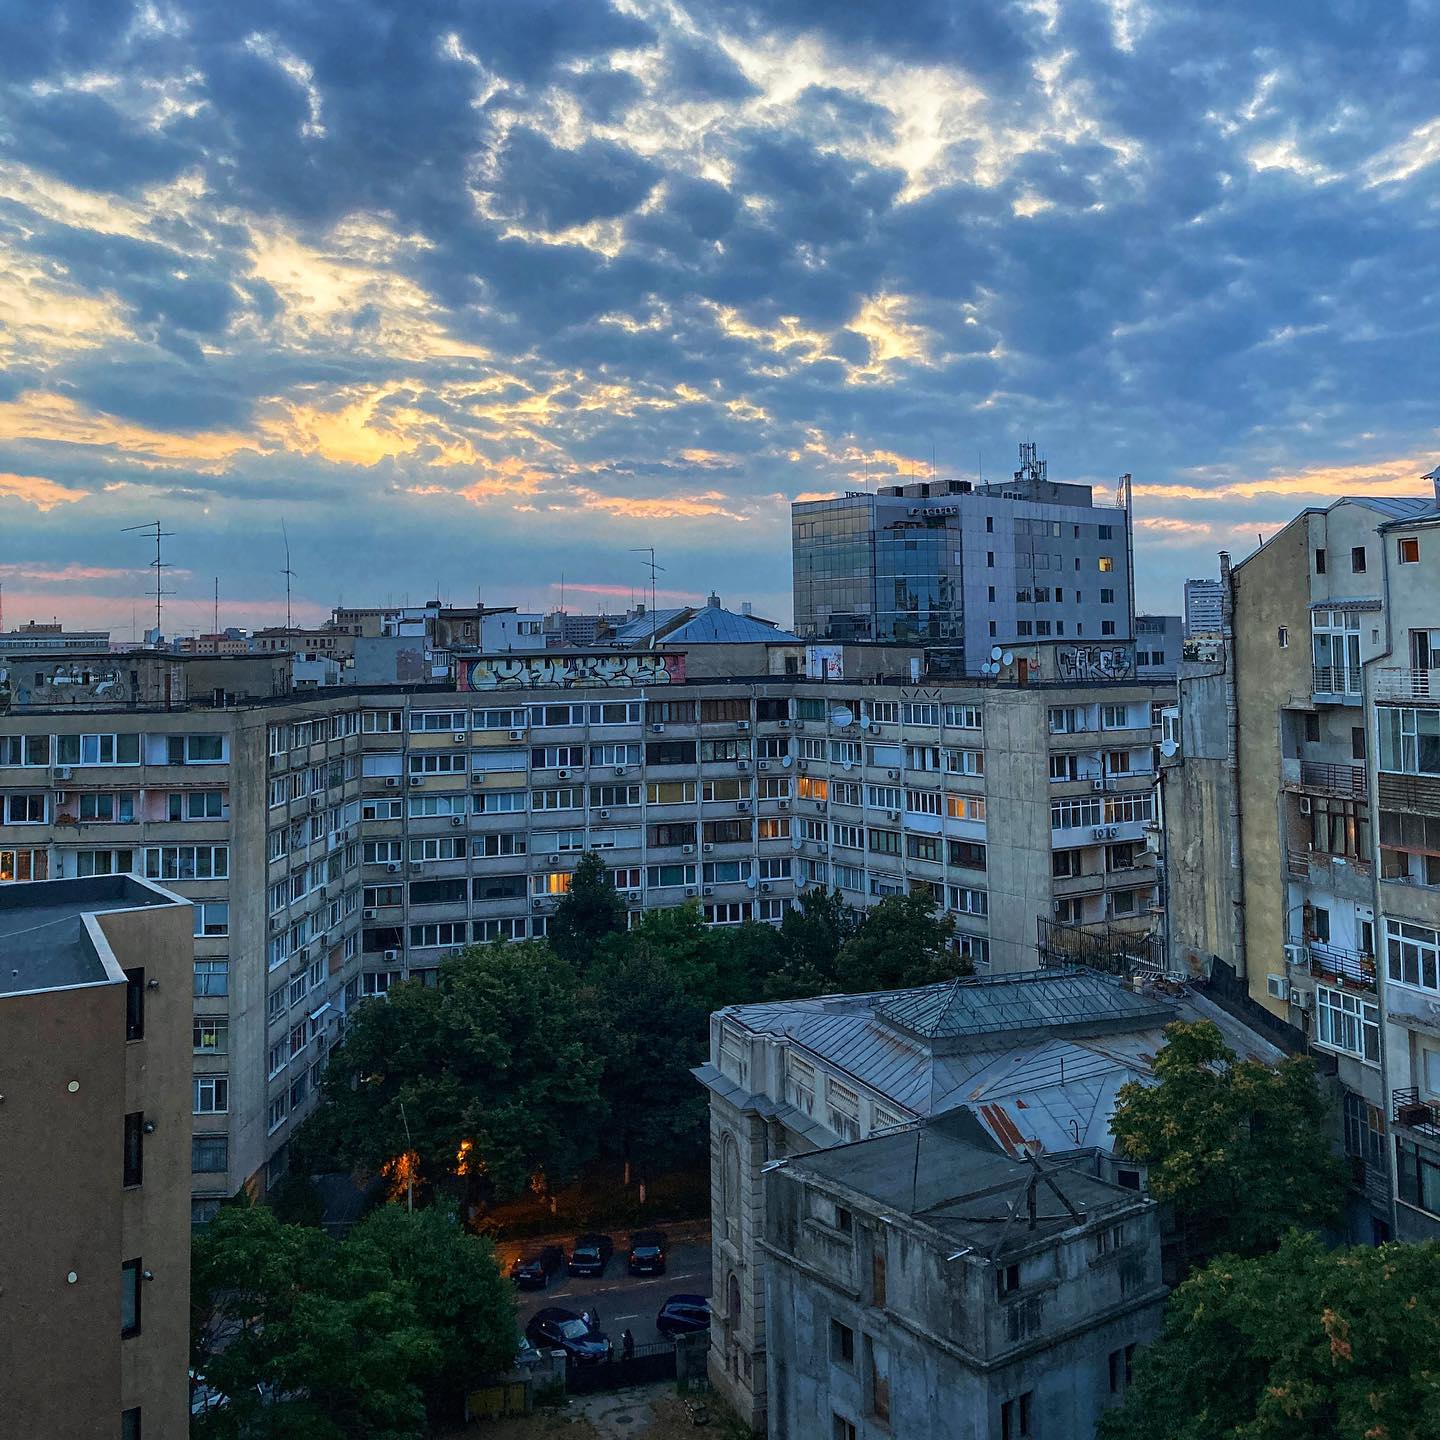 Aangekomen in Boekarest, de hoofdstad van Roemenië. Eerste indruk: prachtig, maar (soms) verwaarloost. Komende dagen de stad verkennen. 💡Heb je een ultieme tip? Kom maar door!